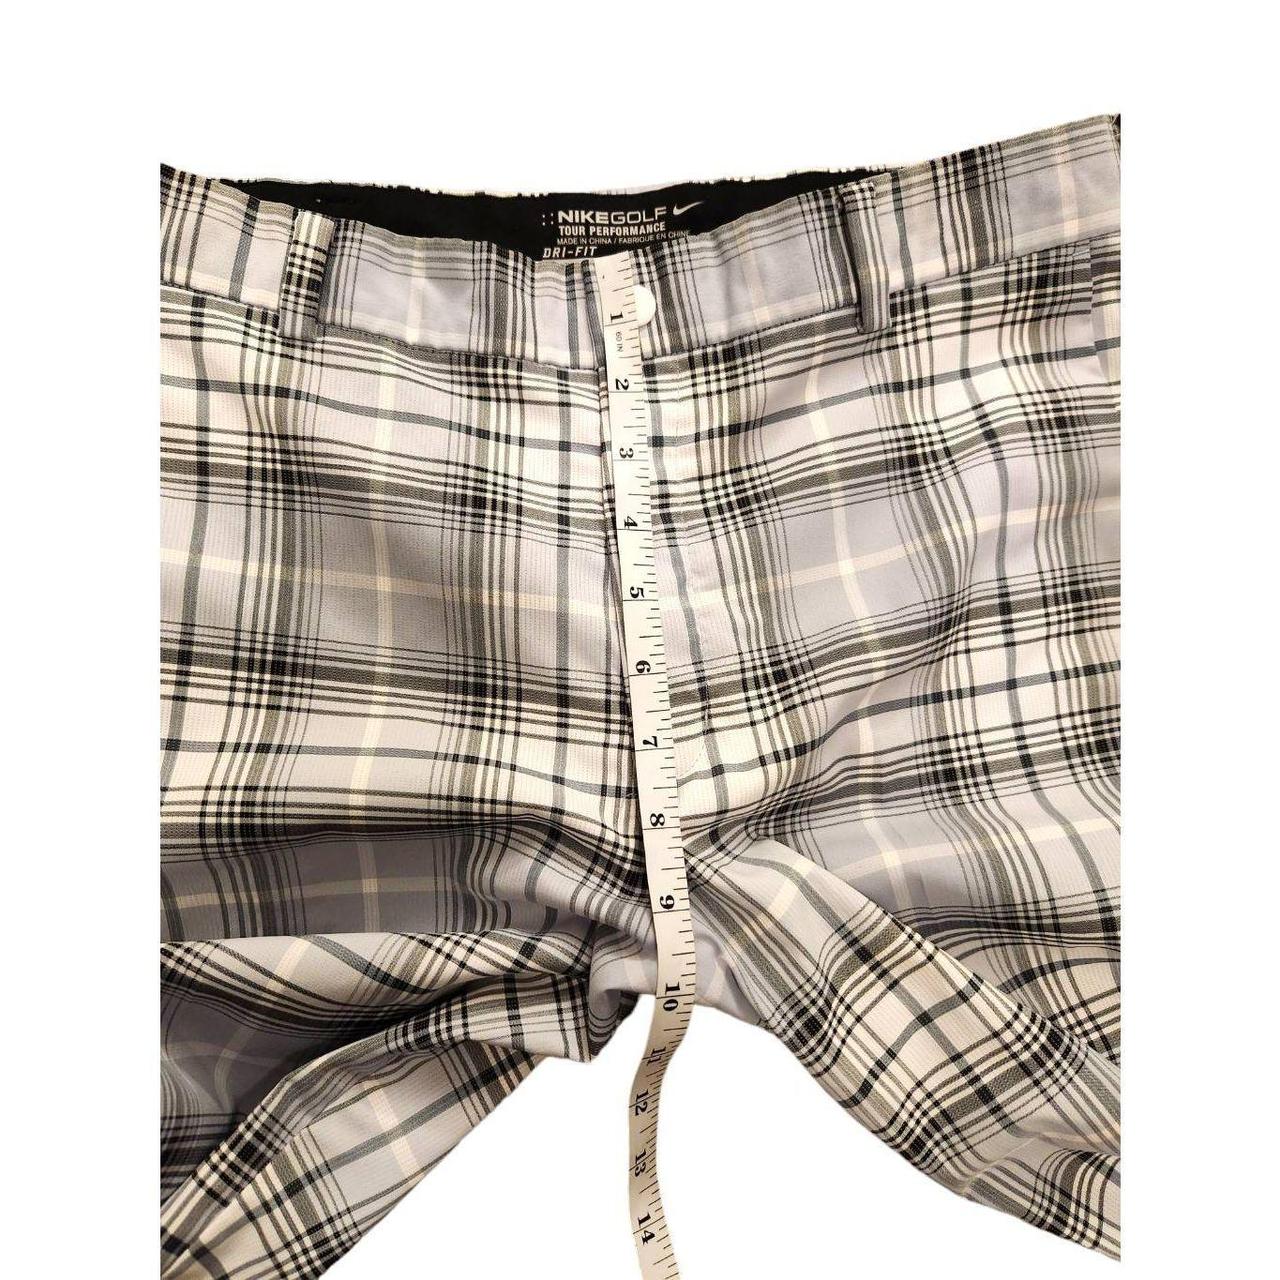 Nike Golf Tour Performance Plaid Tartan Trousers Dri-Fit 509741-011 Mens  W32/L32 | eBay